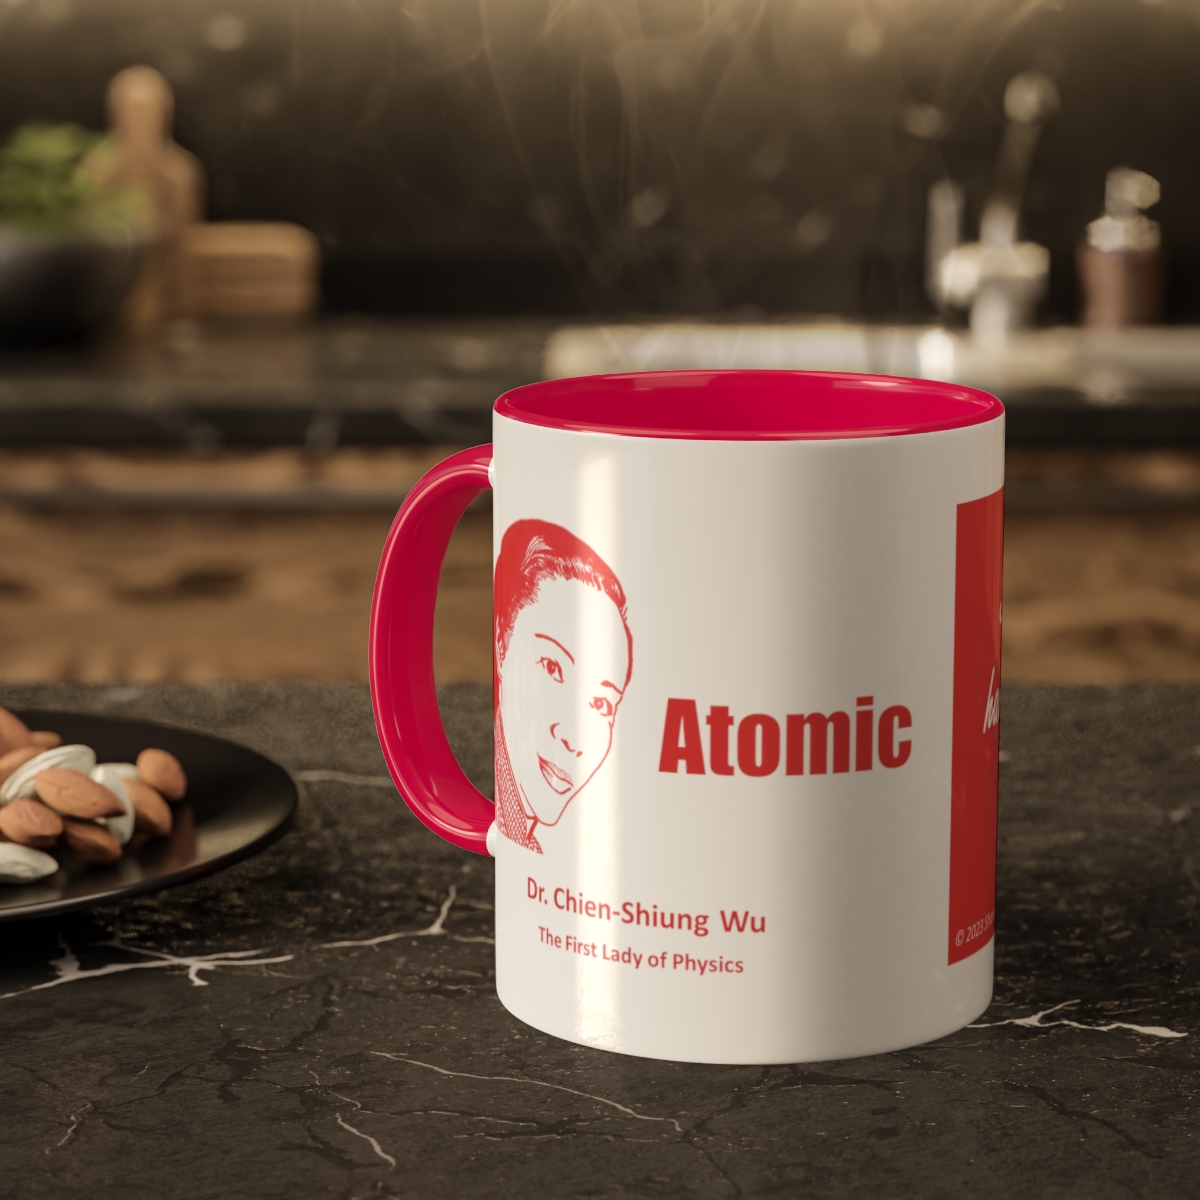 Dr. Chien-Shiung Wu Mug "Atomic" product thumbnail image